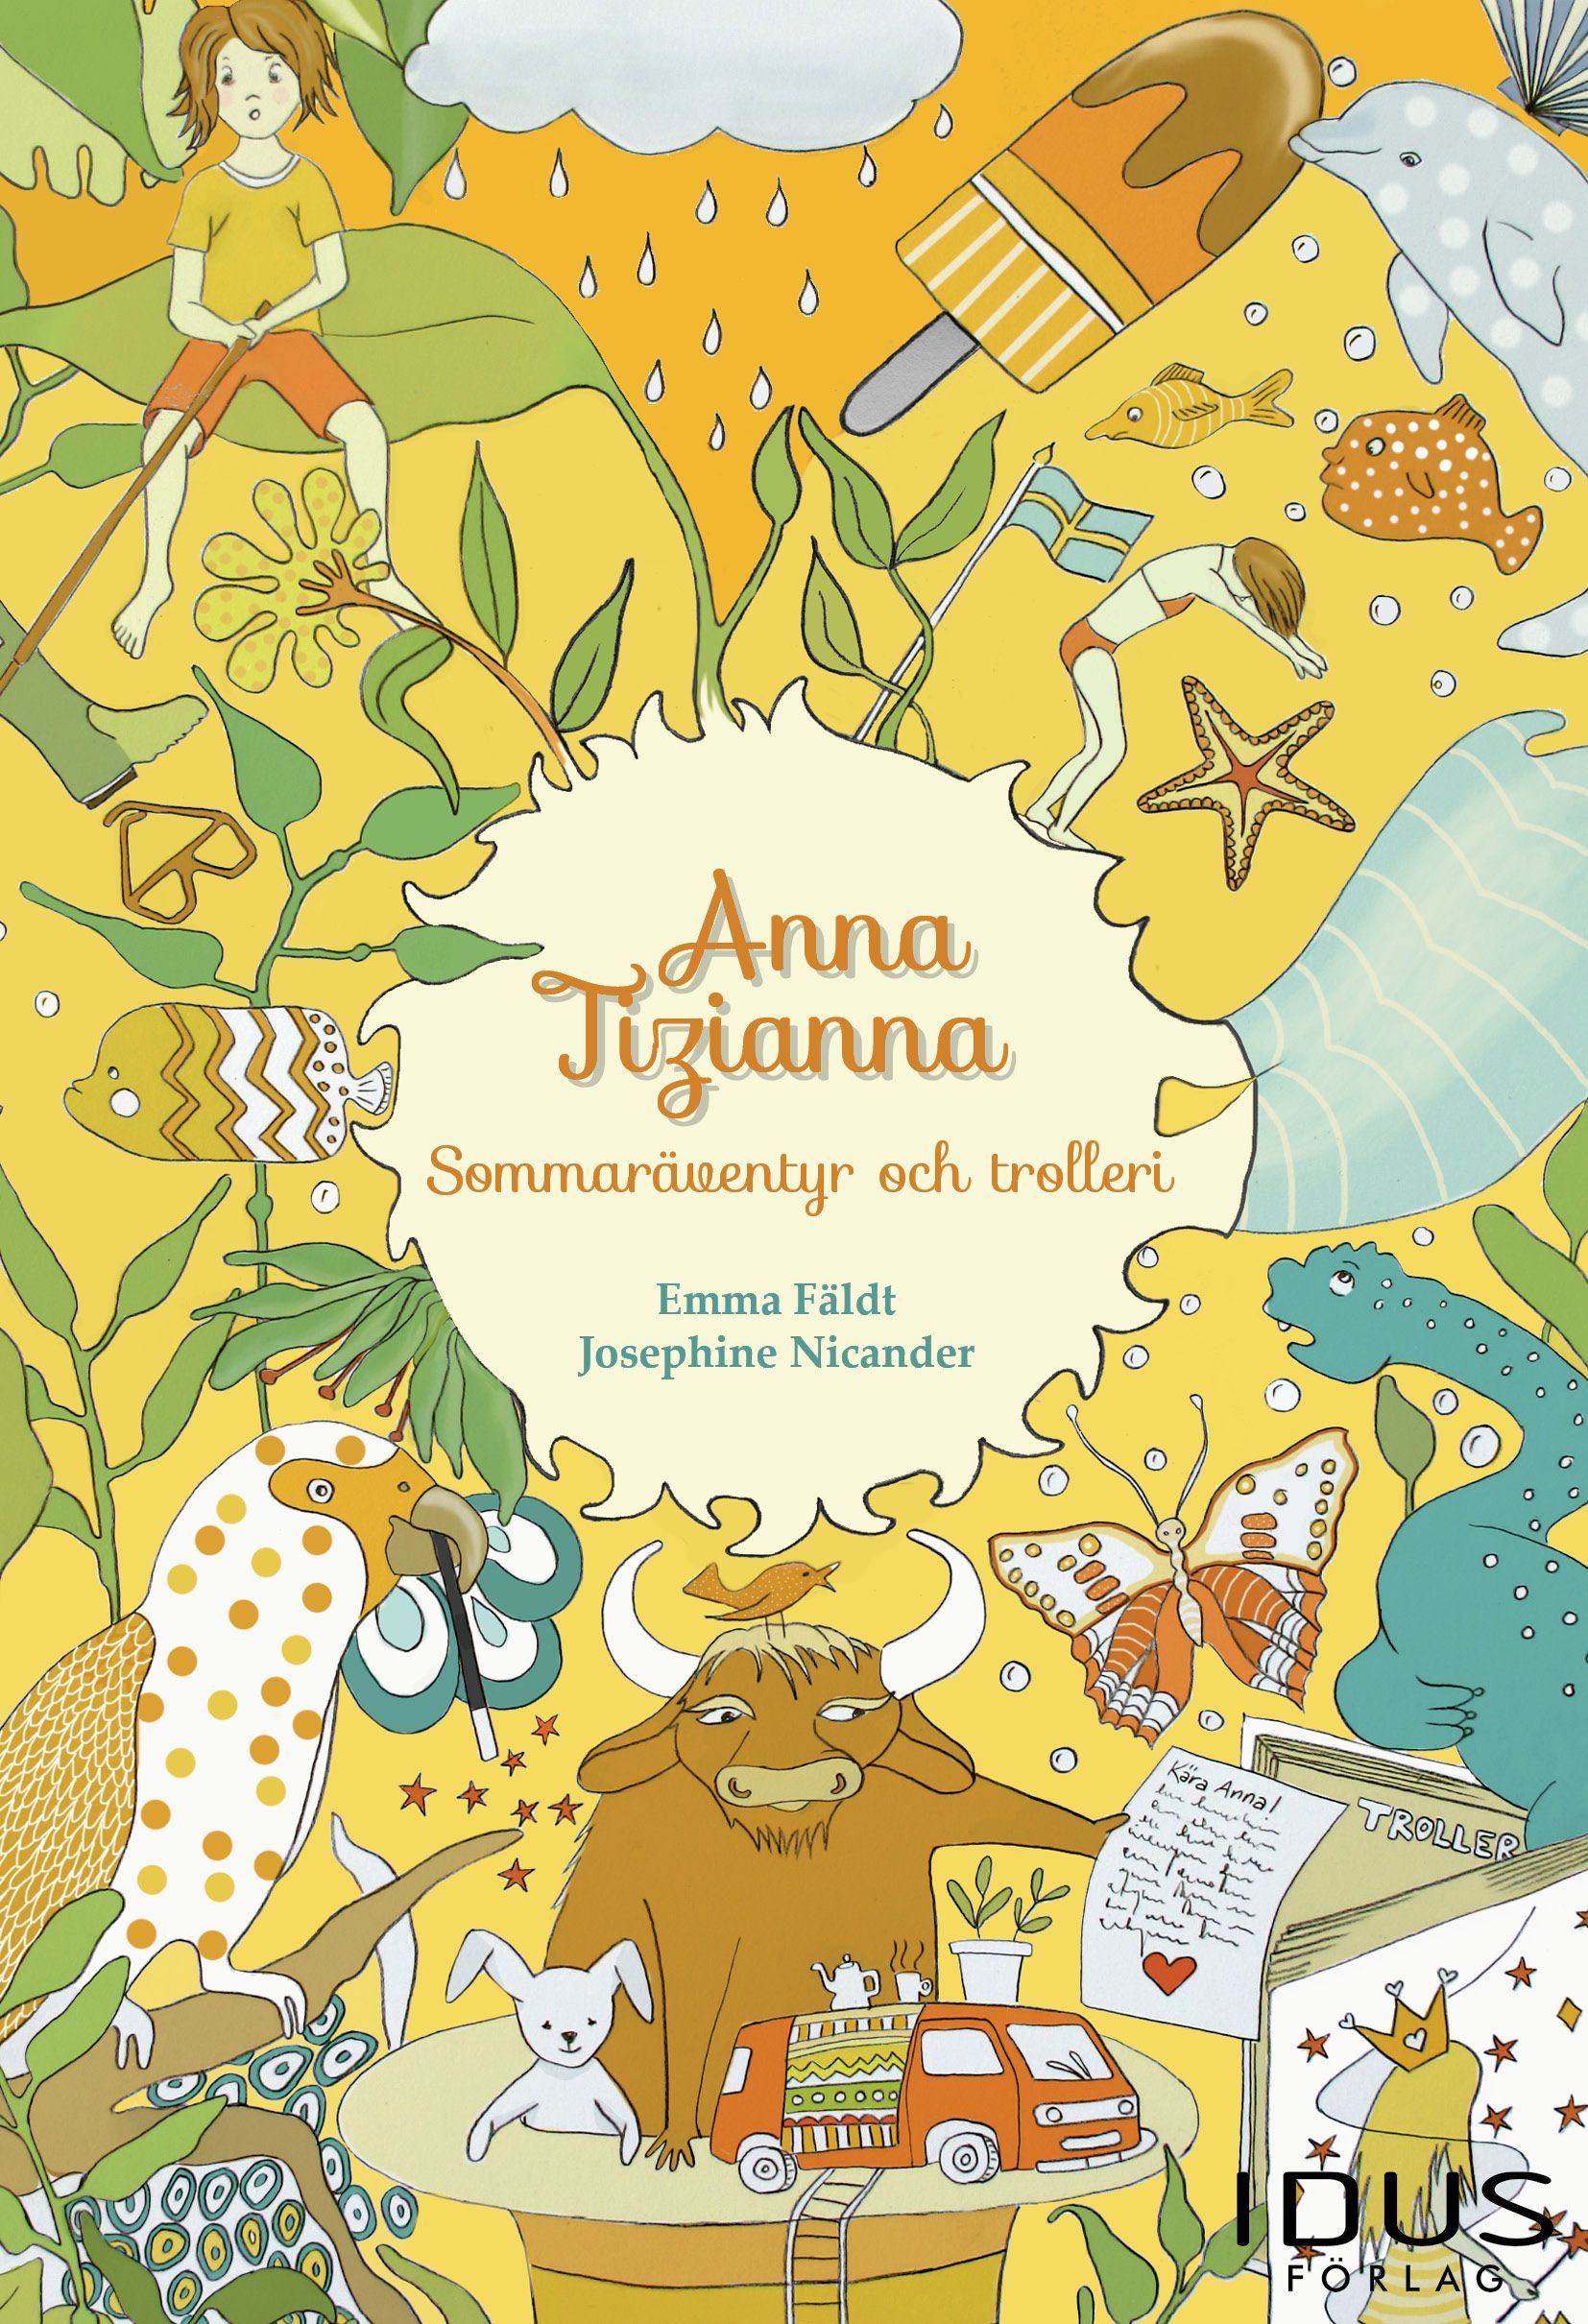 Anna Tizianna – Sommaräventyr och trolleri, e-bog af Emma Fäldt